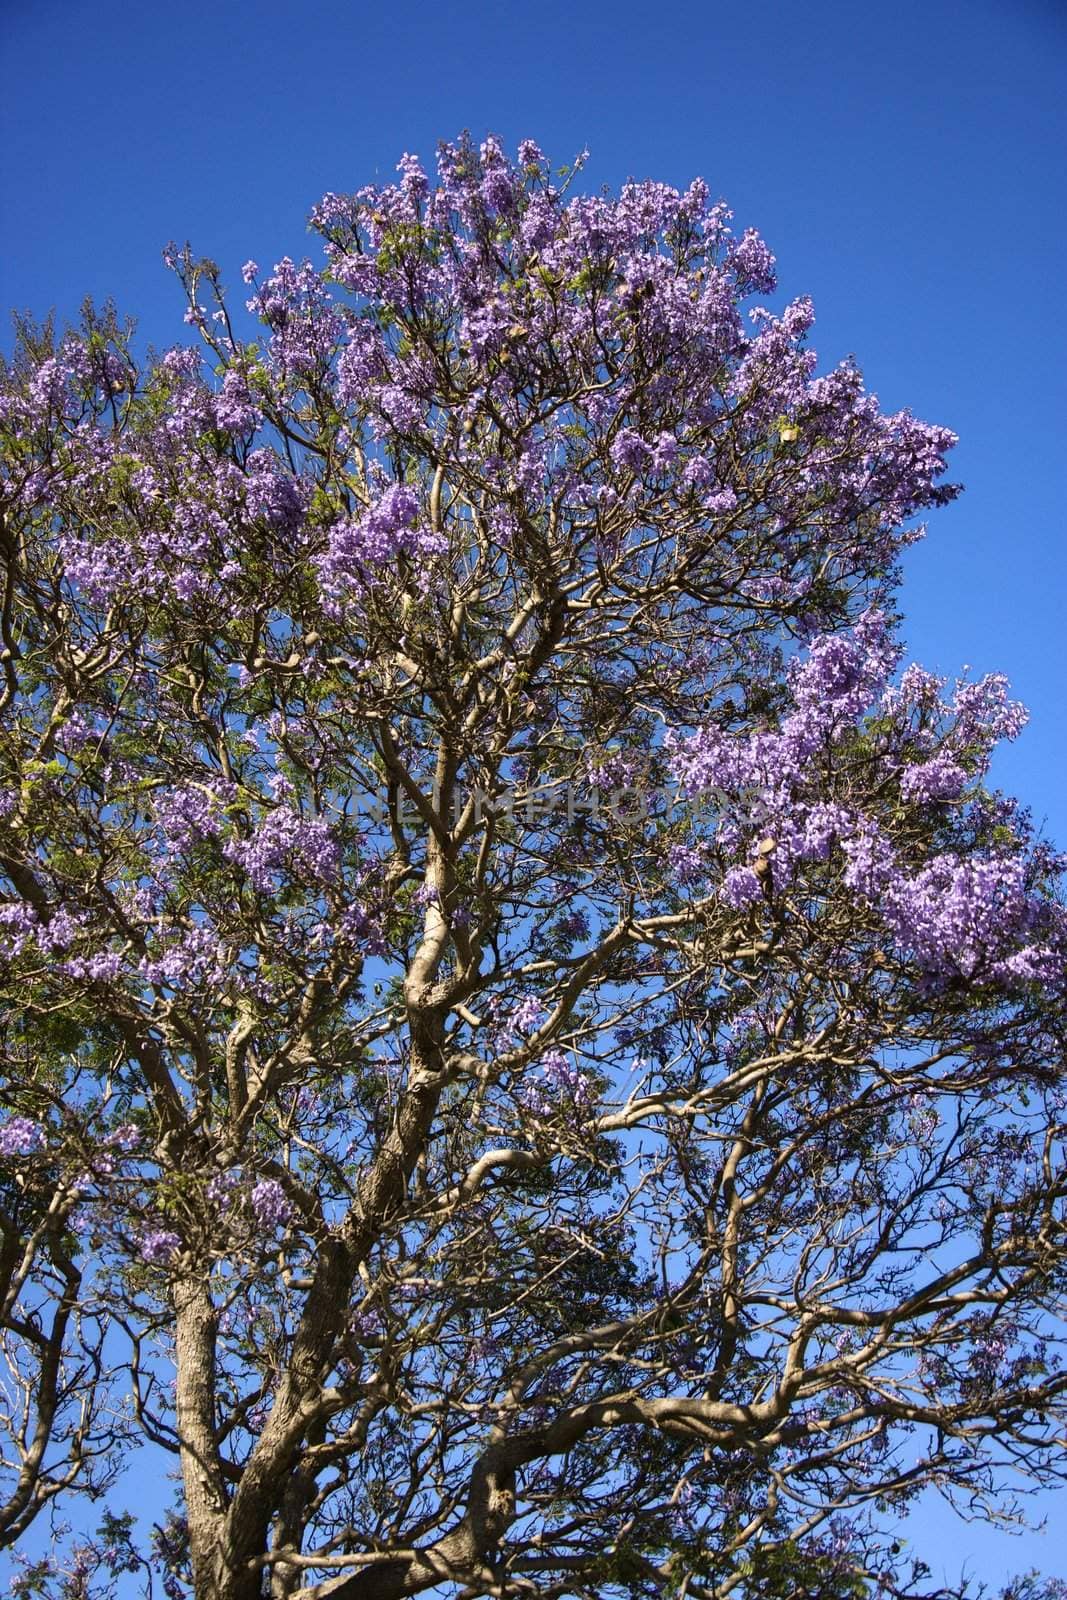 Jacaranda tree blooming with purple flowers against blue sky in Maui, Hawaii.